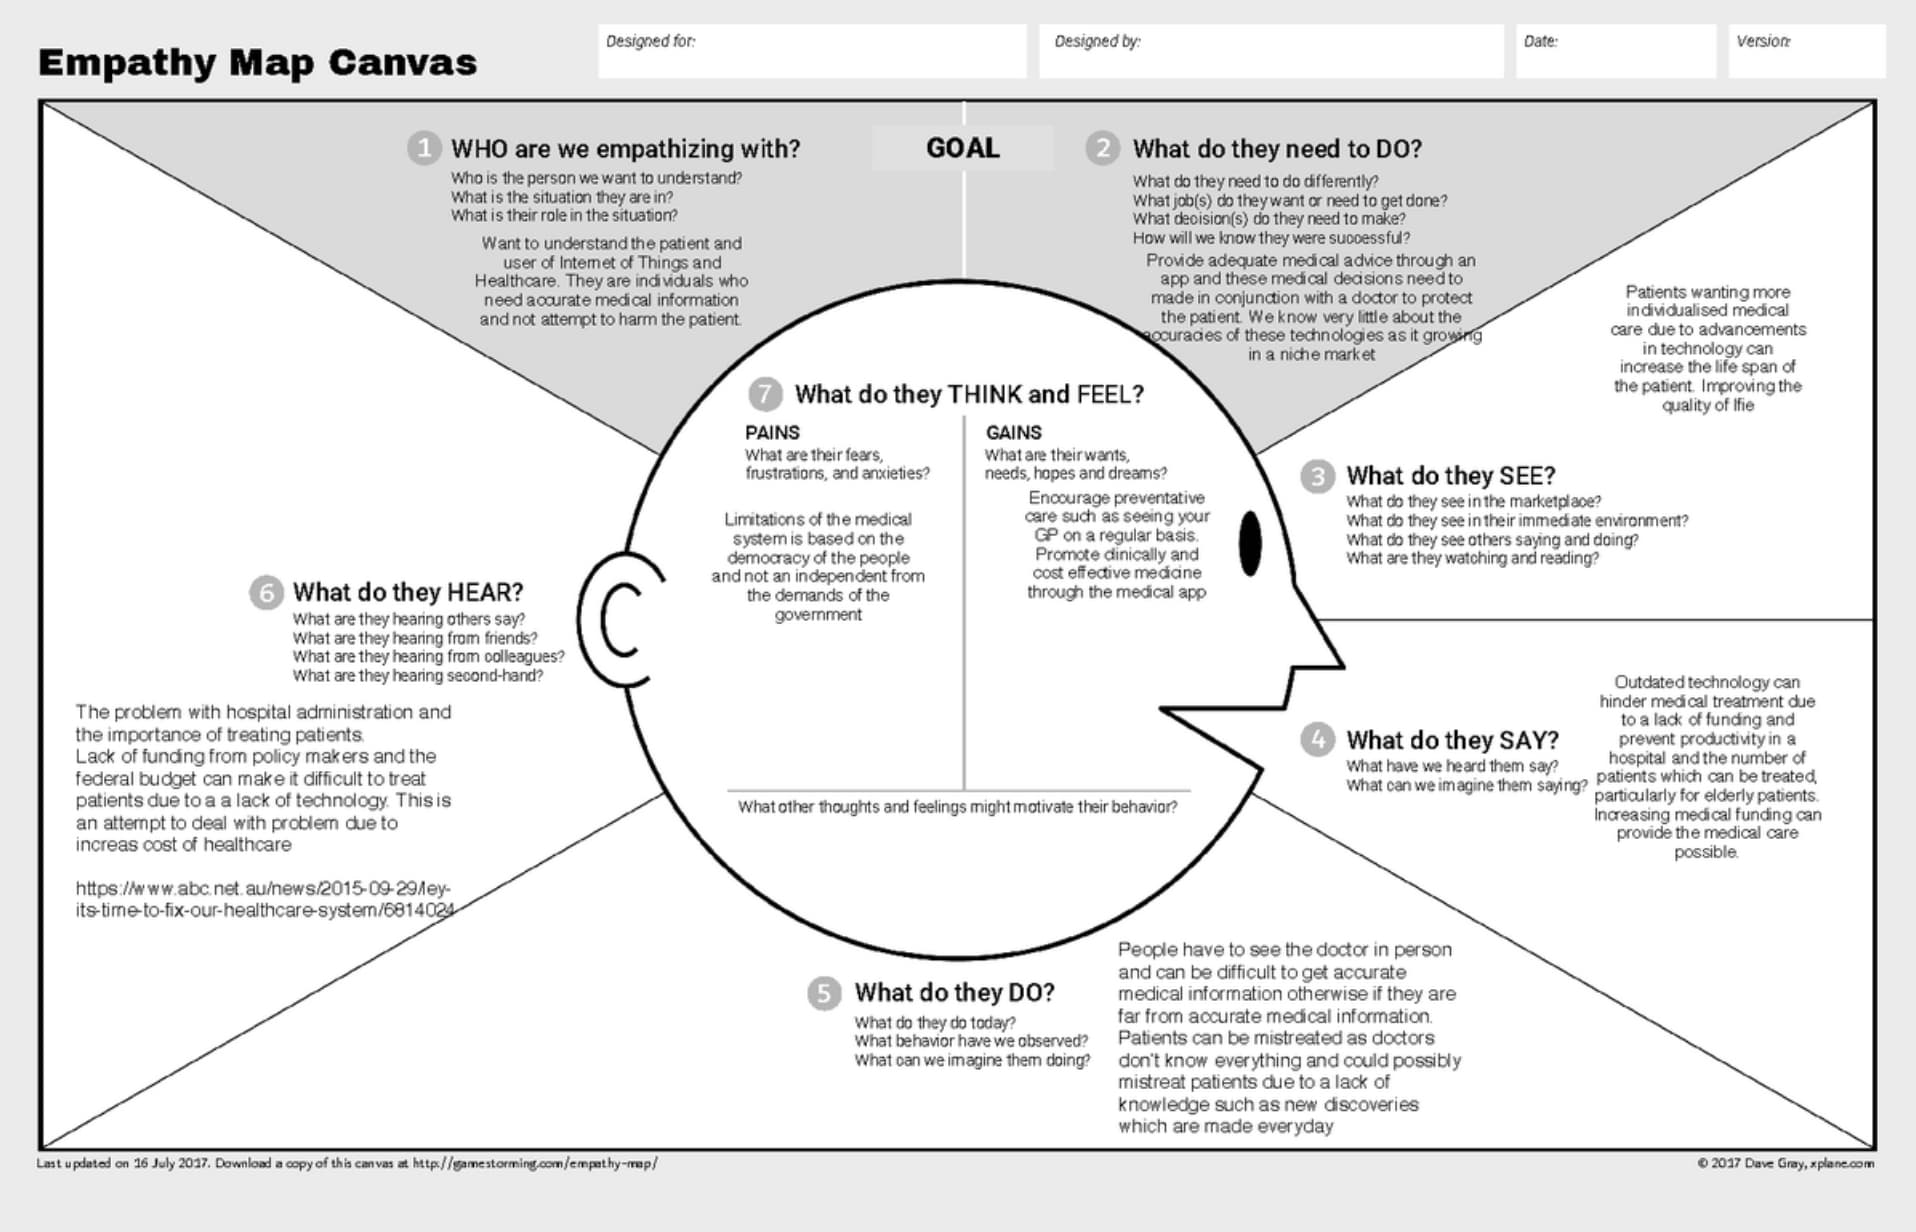 Empathy Map Canvas - phiên bản cải tiến - được phát triển bởi bội đôi Dave Gray và Alex Osterwalder.